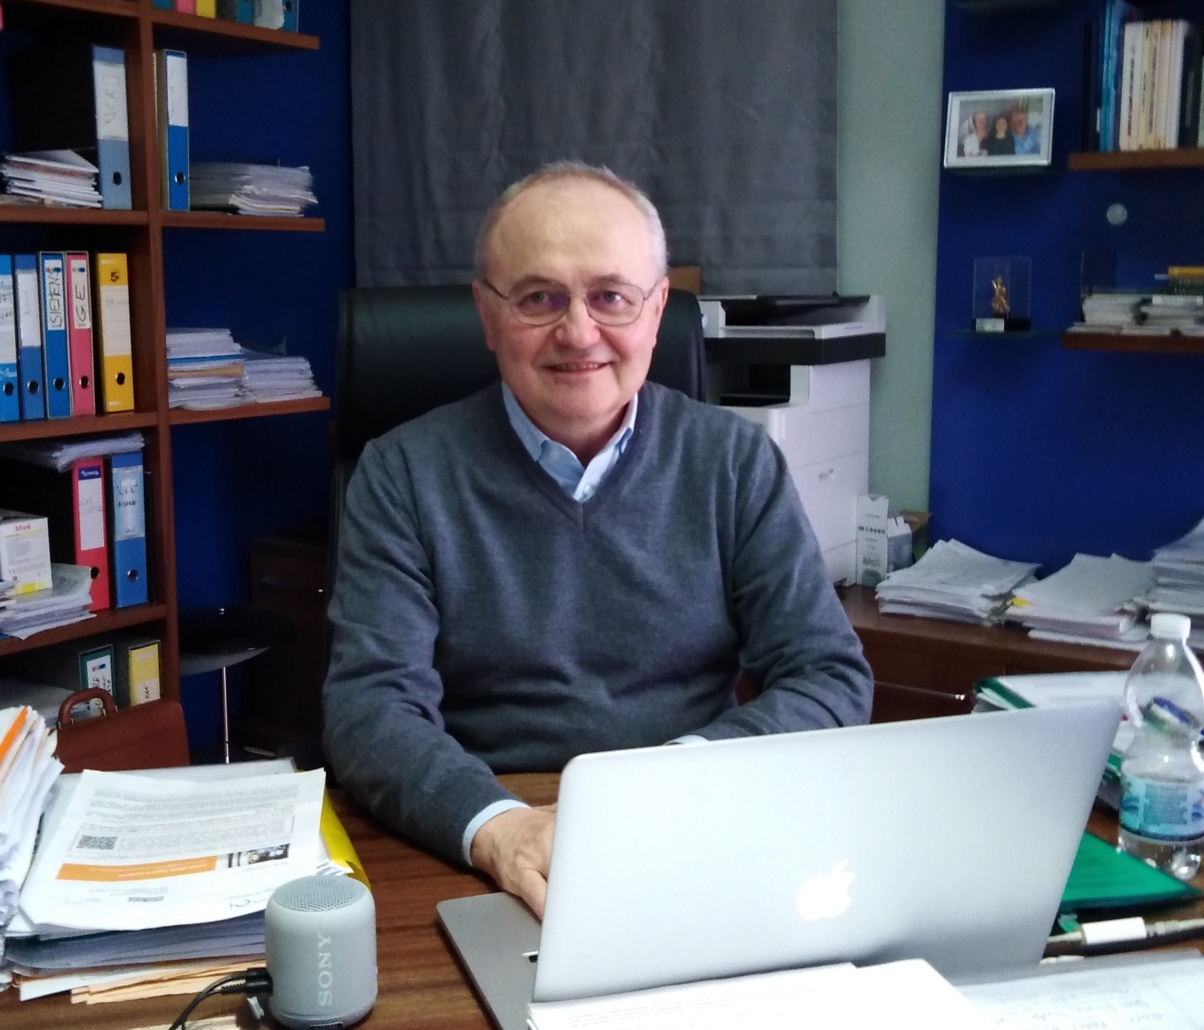 Giovanni Cariolato, fondatore e CEO dellaGDS, Global Display Solutions